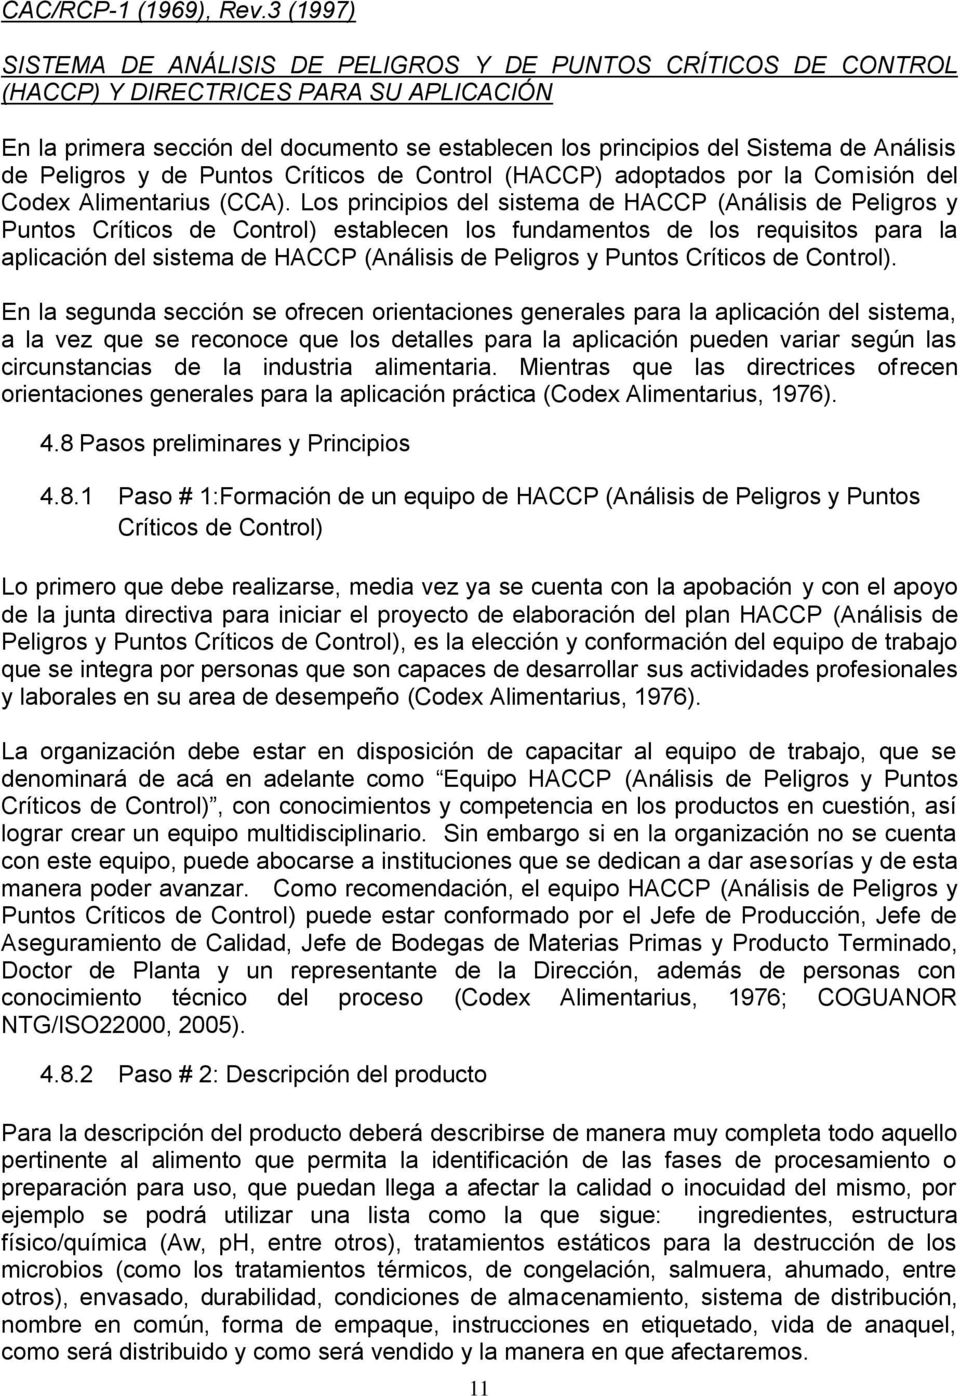 Análisis de Peligros y de Puntos Críticos de Control (HACCP) adoptados por la Comisión del Codex Alimentarius (CCA).